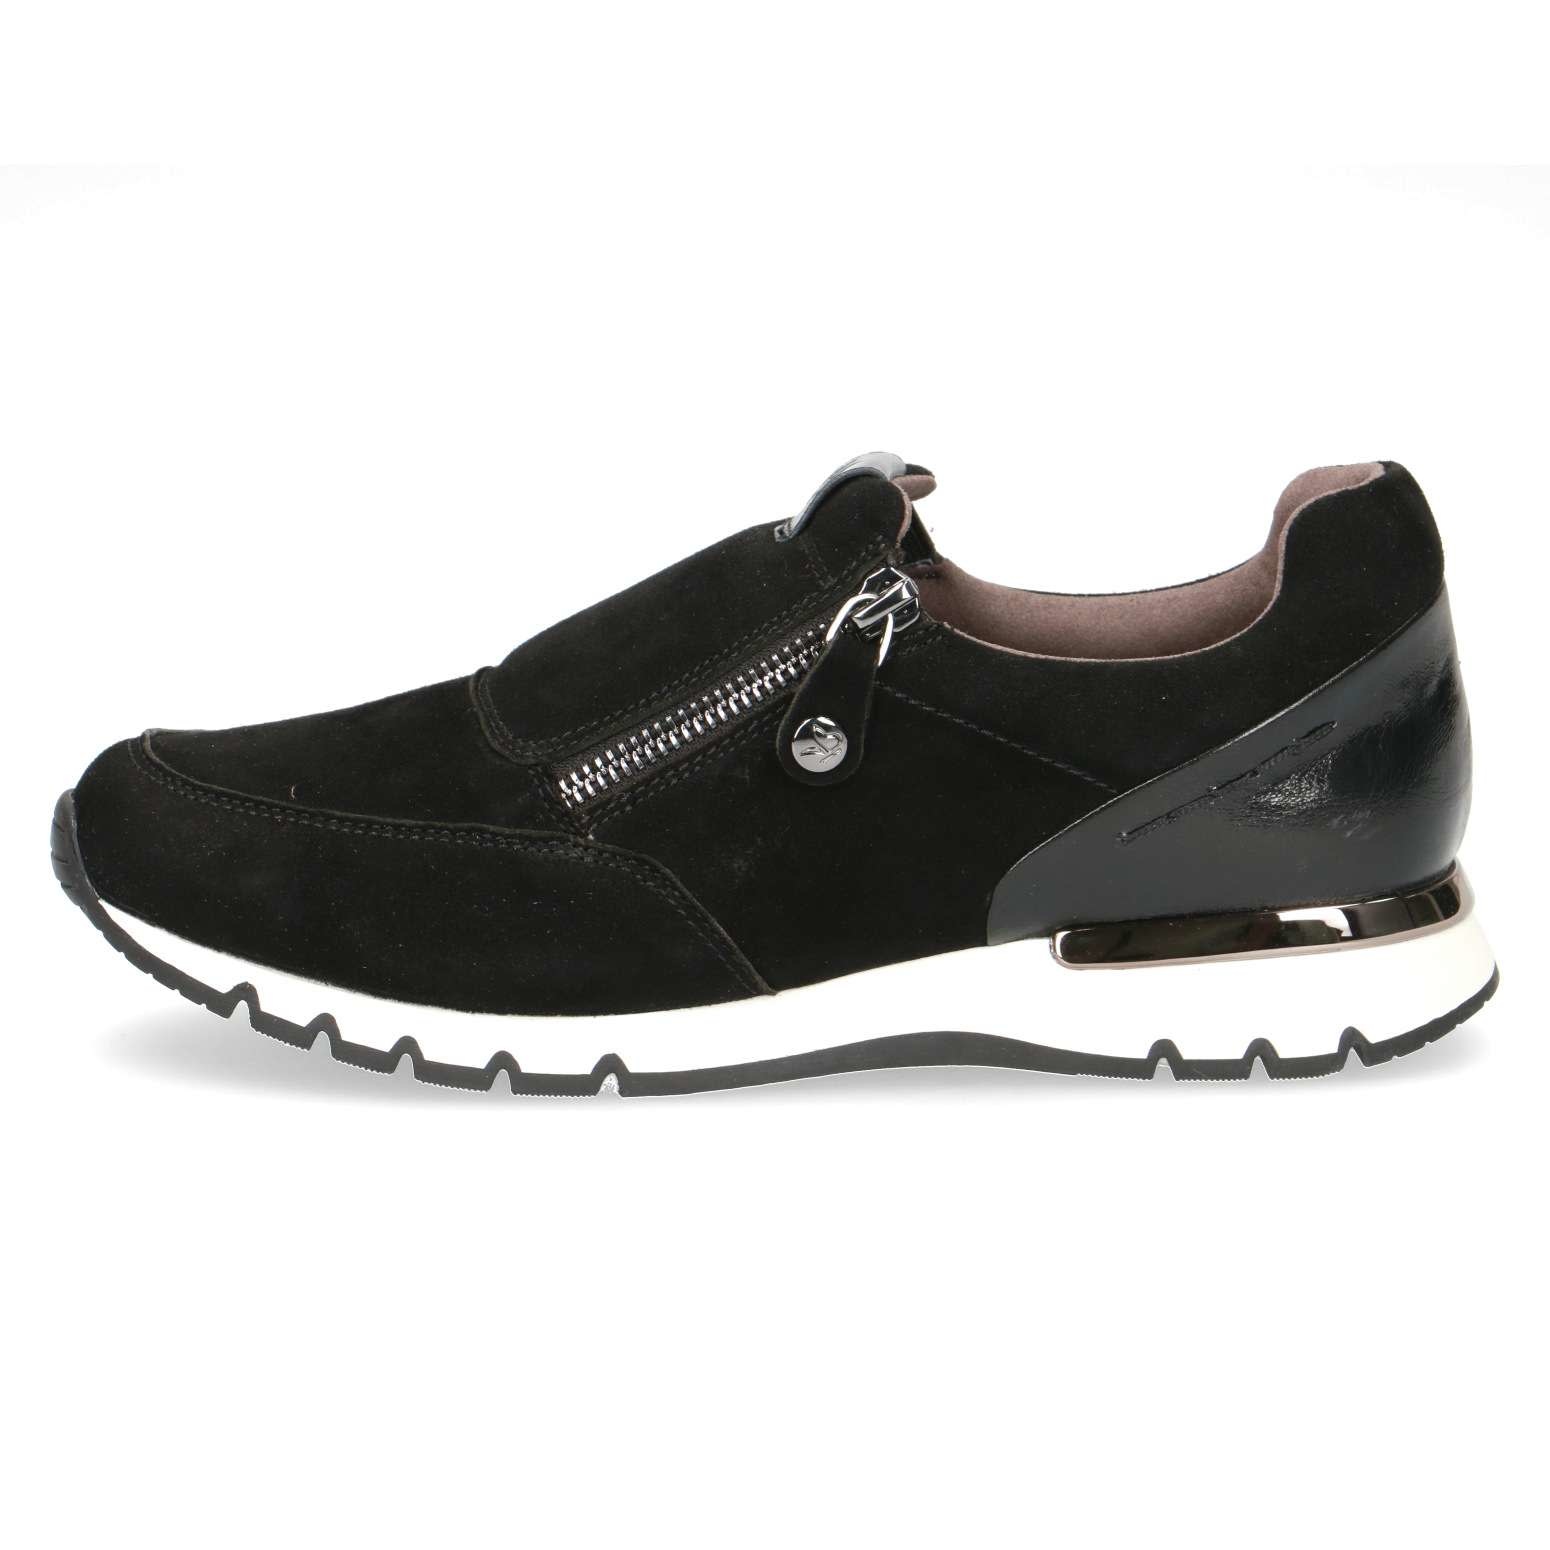 Caprice Caprice 24703 - zwart combi - sneaker